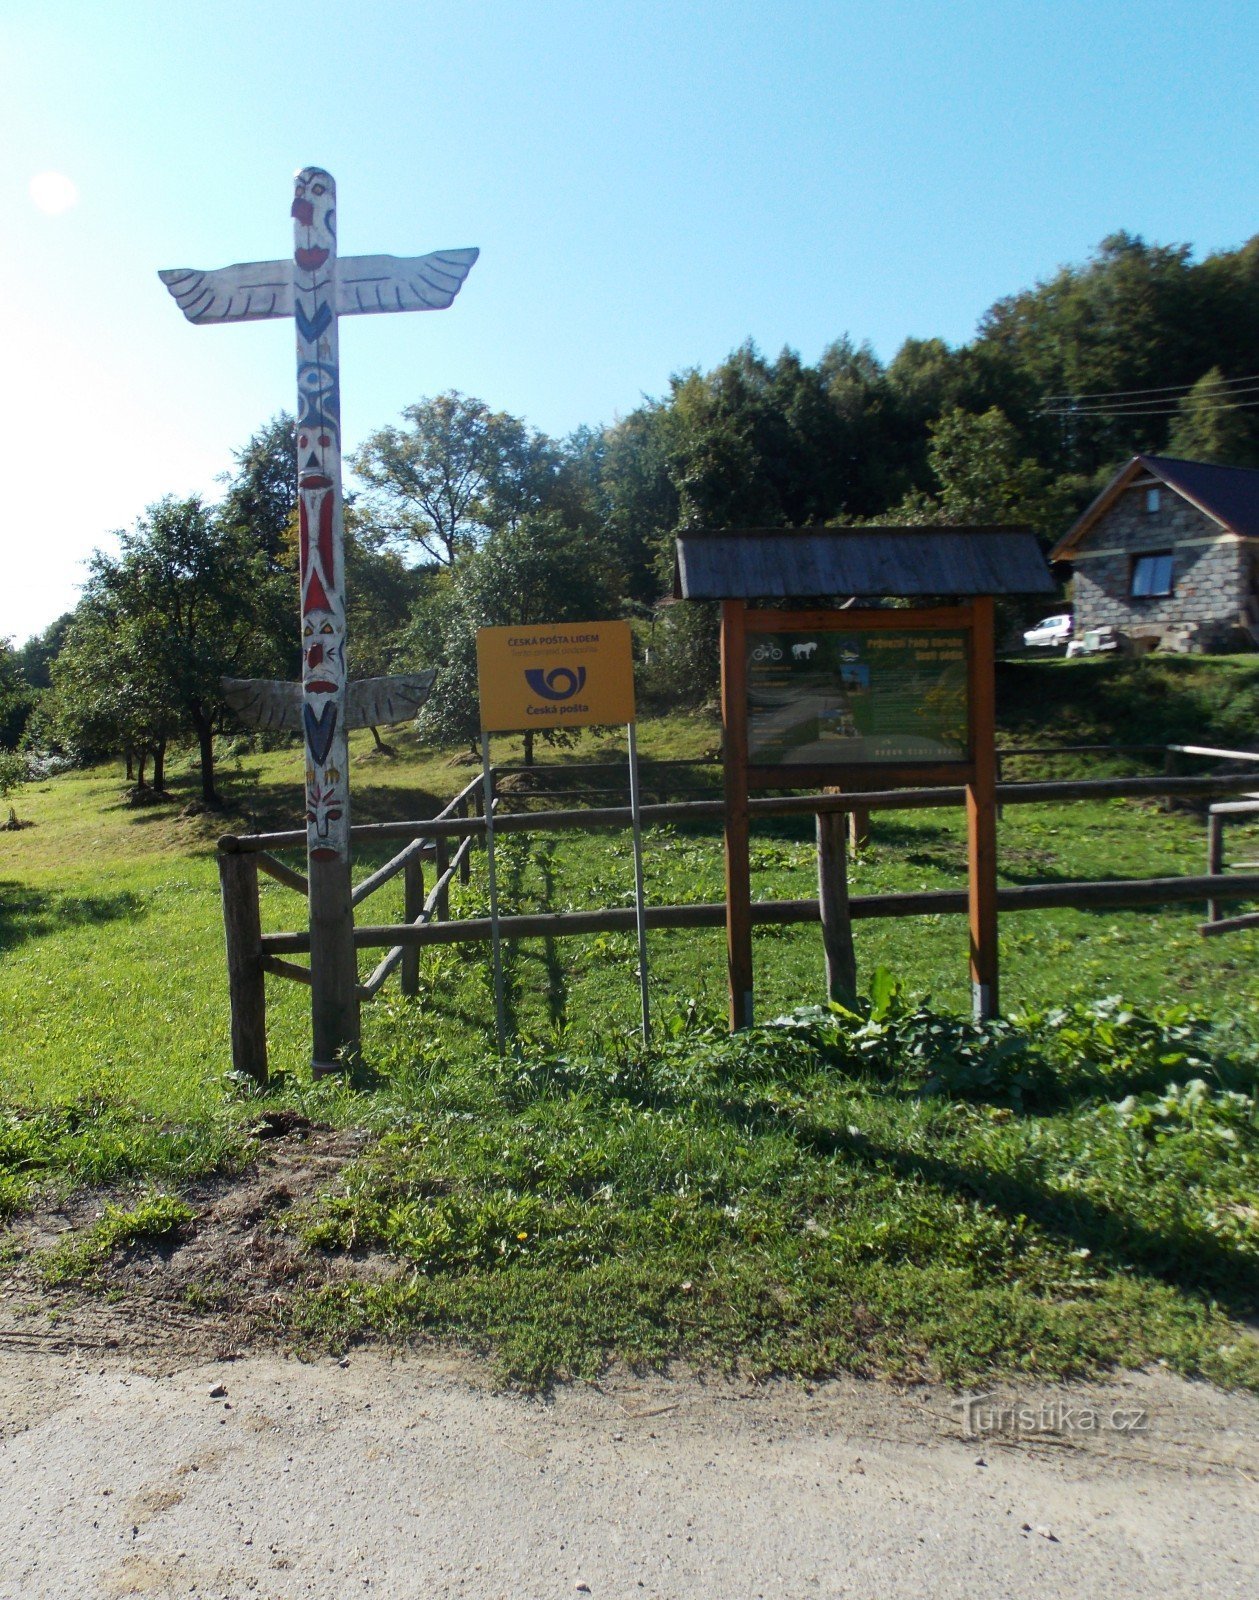 Sommerspaziergang im Dorf Prlov